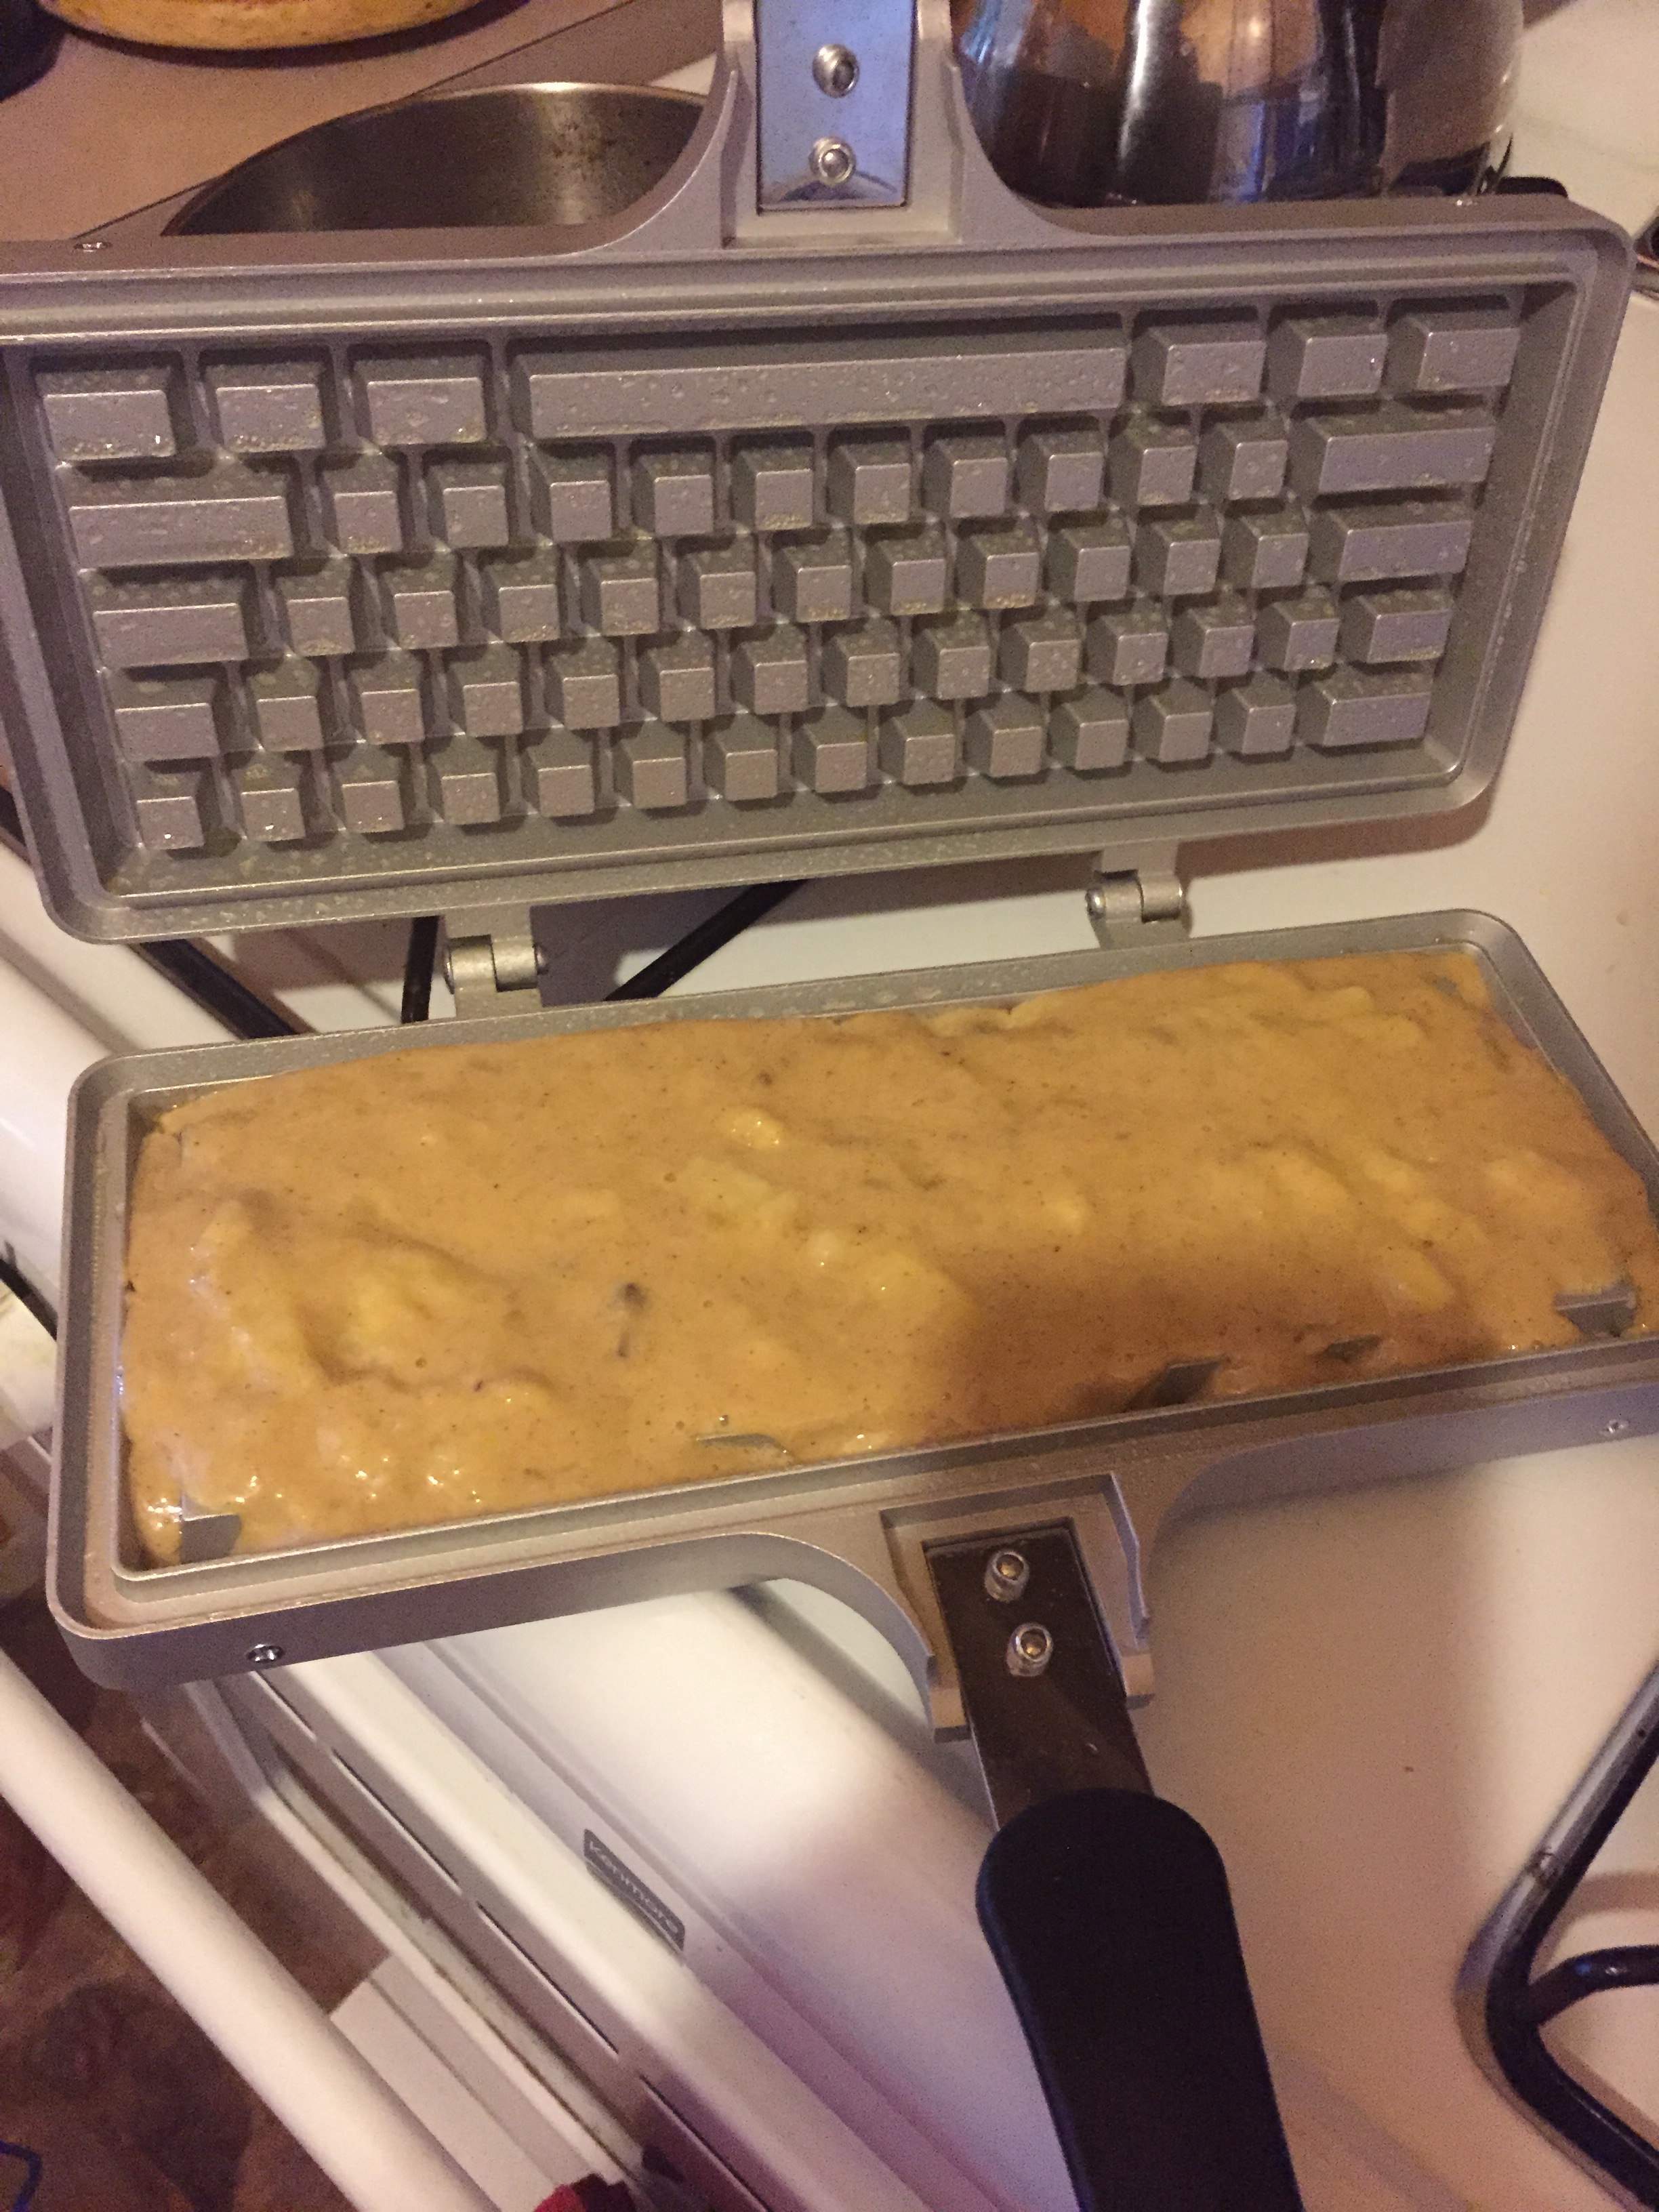 Keyboard Waffle Iron | UncommonGoods